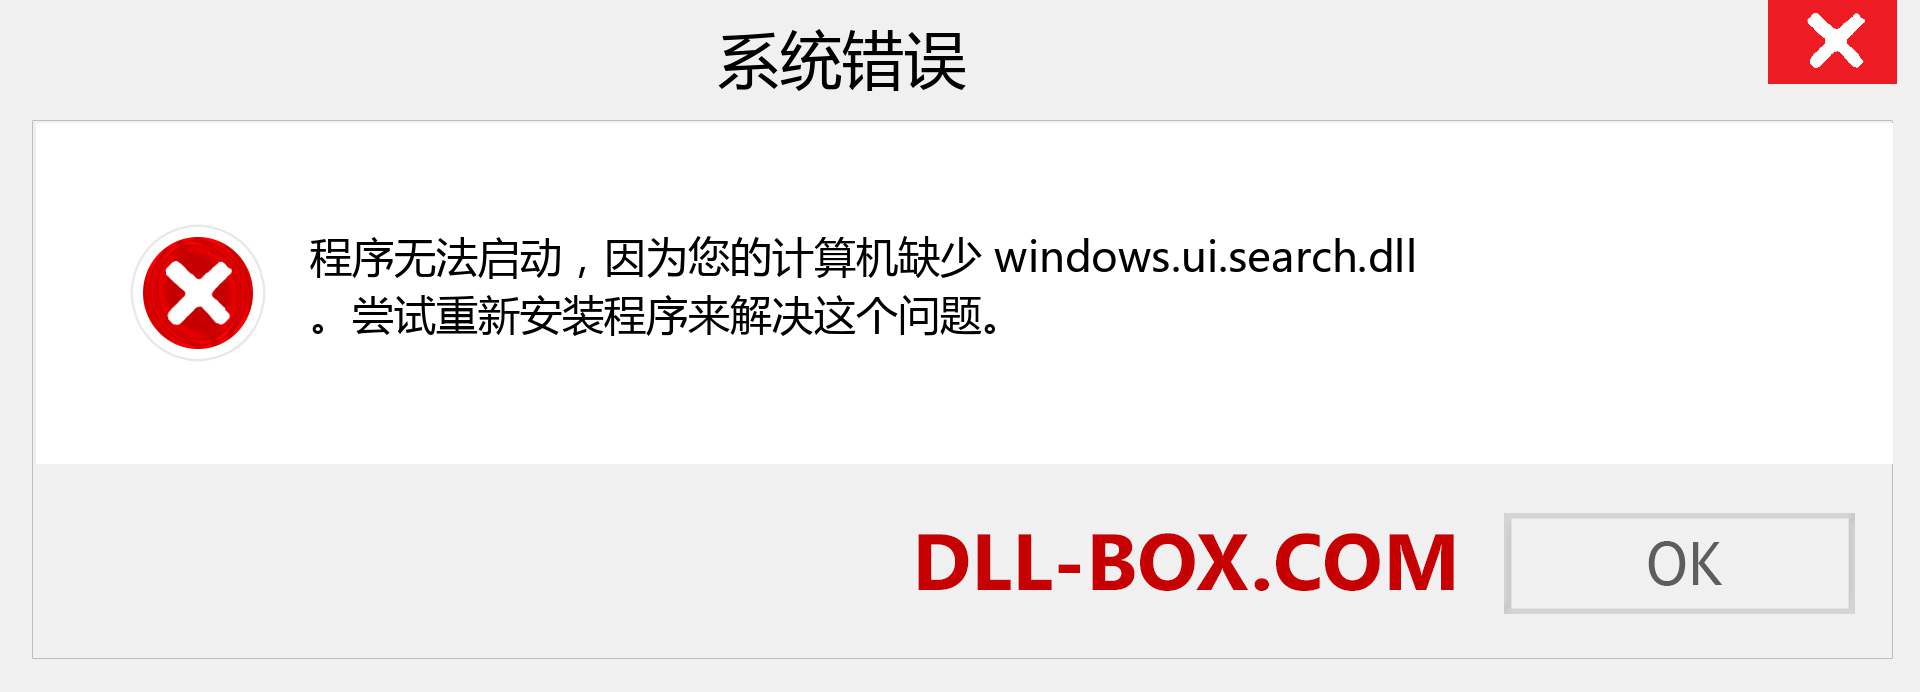 windows.ui.search.dll 文件丢失？。 适用于 Windows 7、8、10 的下载 - 修复 Windows、照片、图像上的 windows.ui.search dll 丢失错误